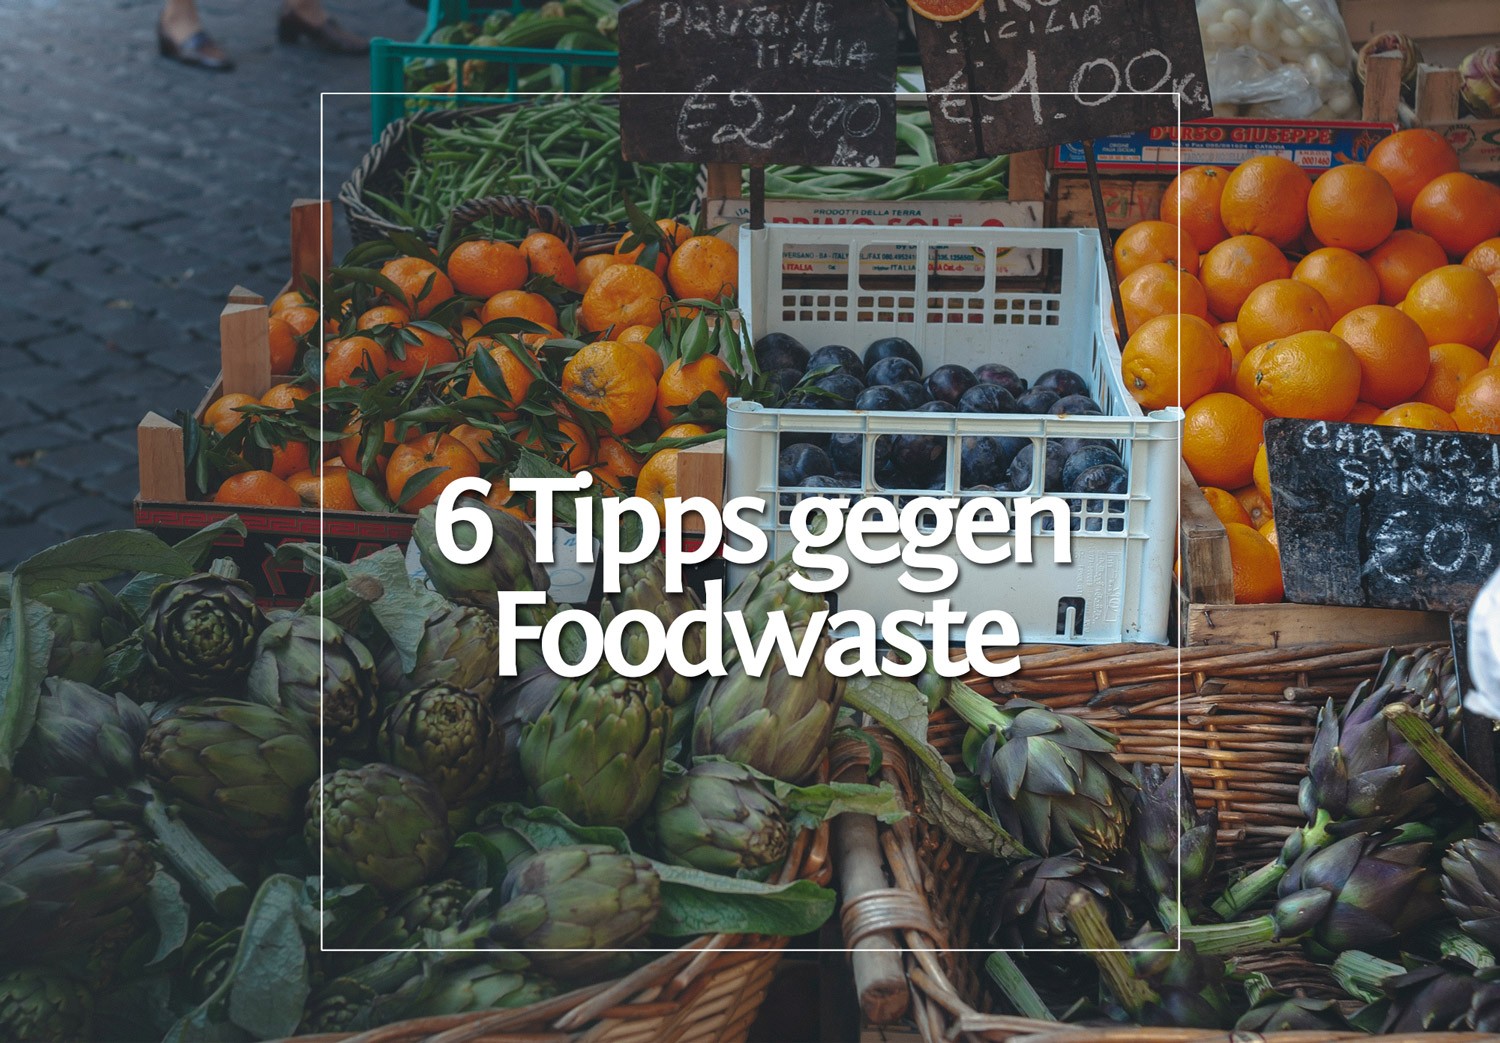 Foodwaste • 6 Tipps wie du ihn verhindern kannst